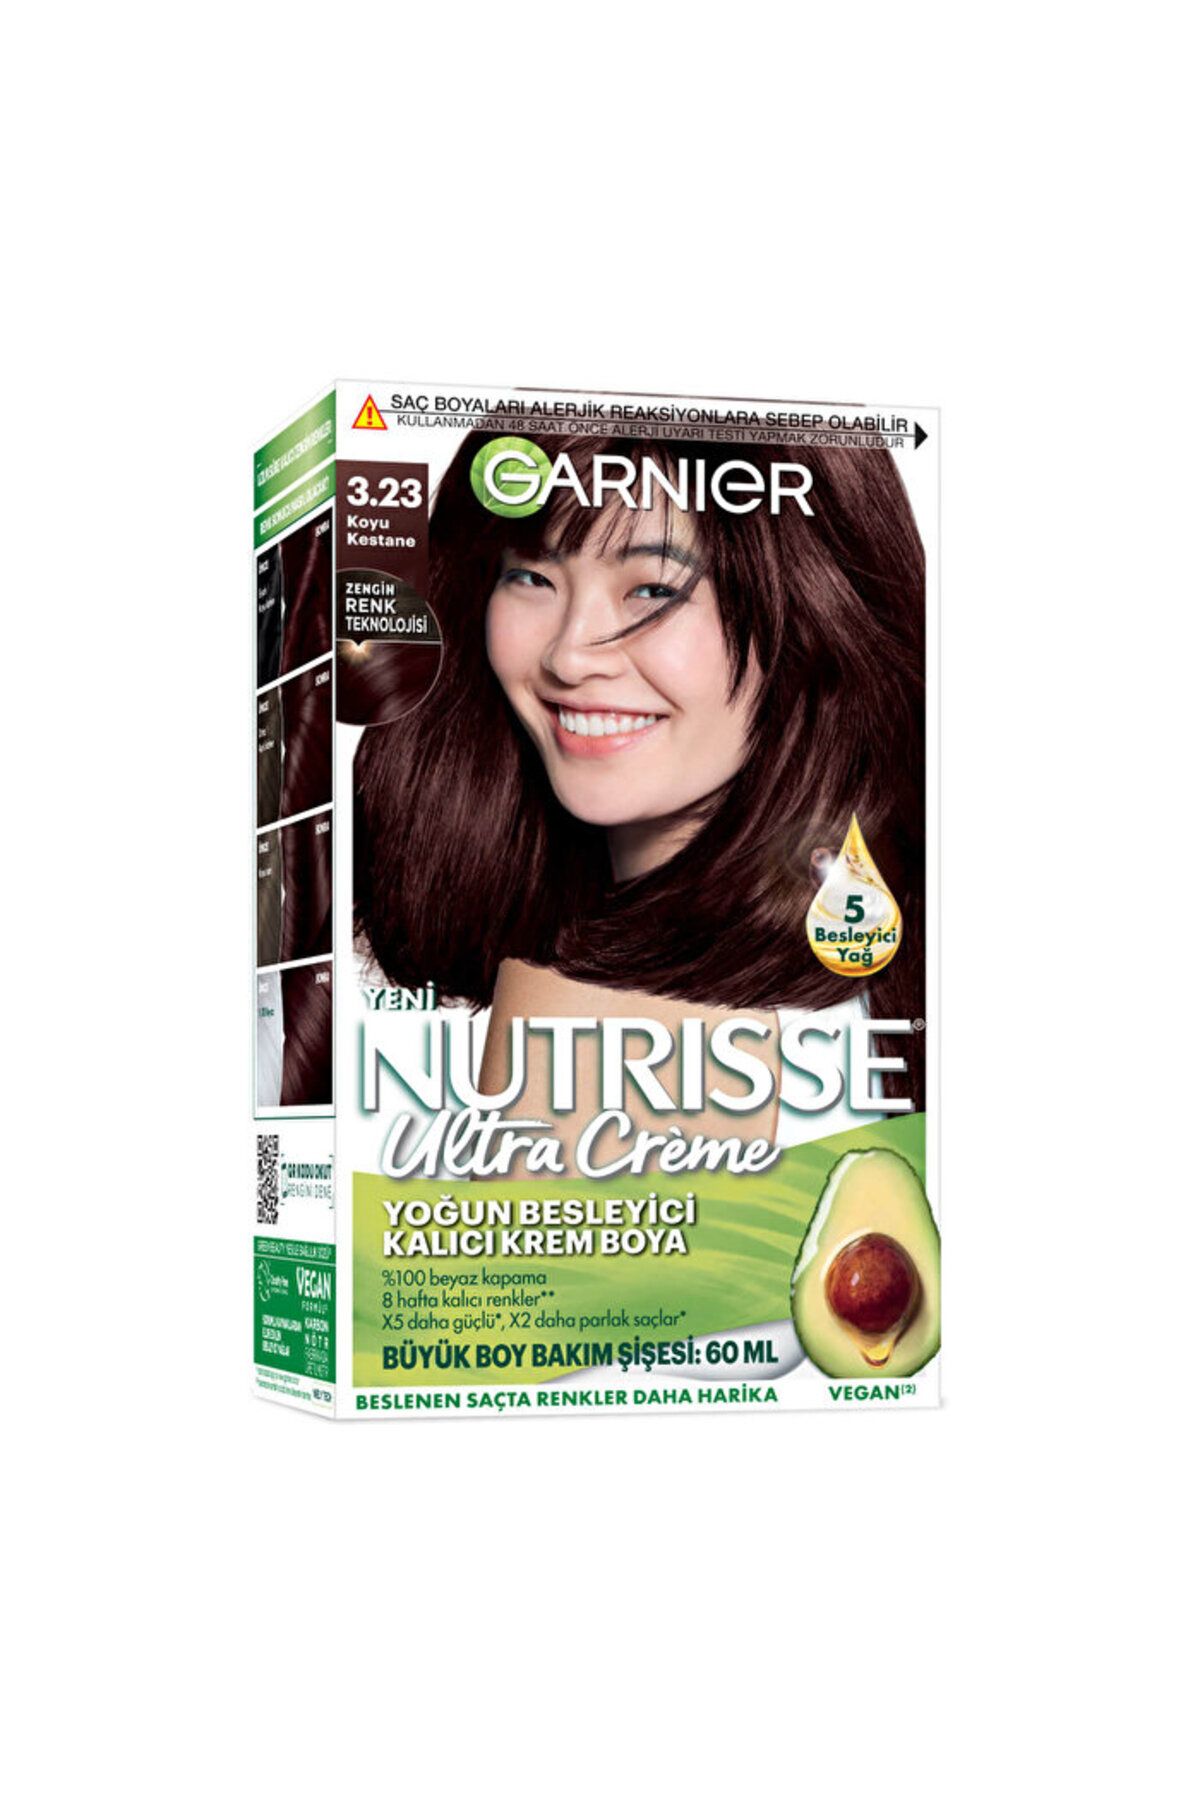 Garnier Nutrisse Yoğun Besleyici Kalıcı Krem Saç Boyası - 3.23 Koyu Kestane - 160 ml